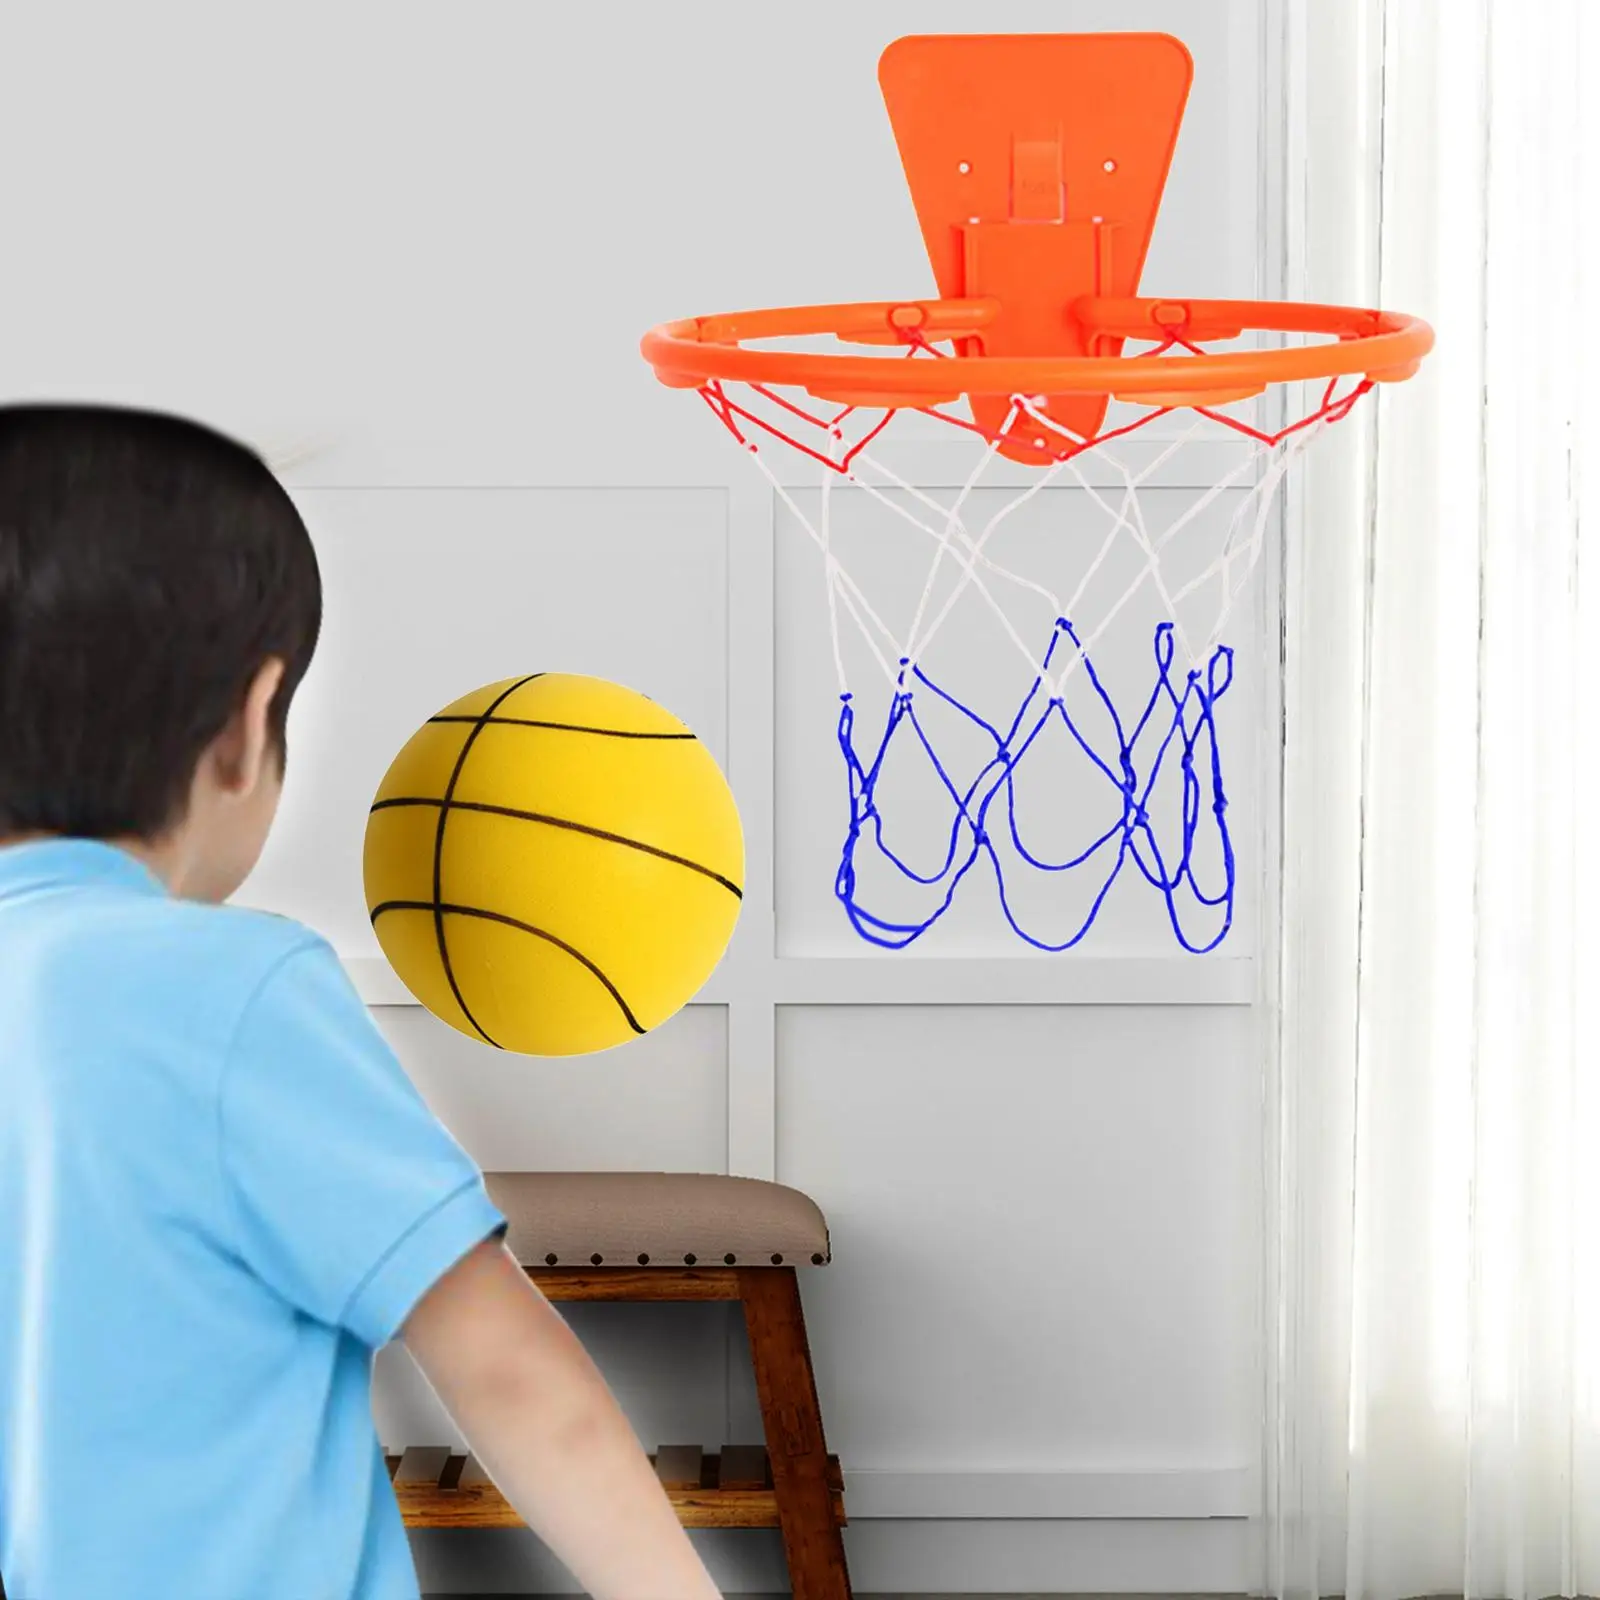 

Бесшумный баскетбольный мяч с кольцом, низкий уровень шума, мяч высокой плотности, бесшумный мяч, игрушка